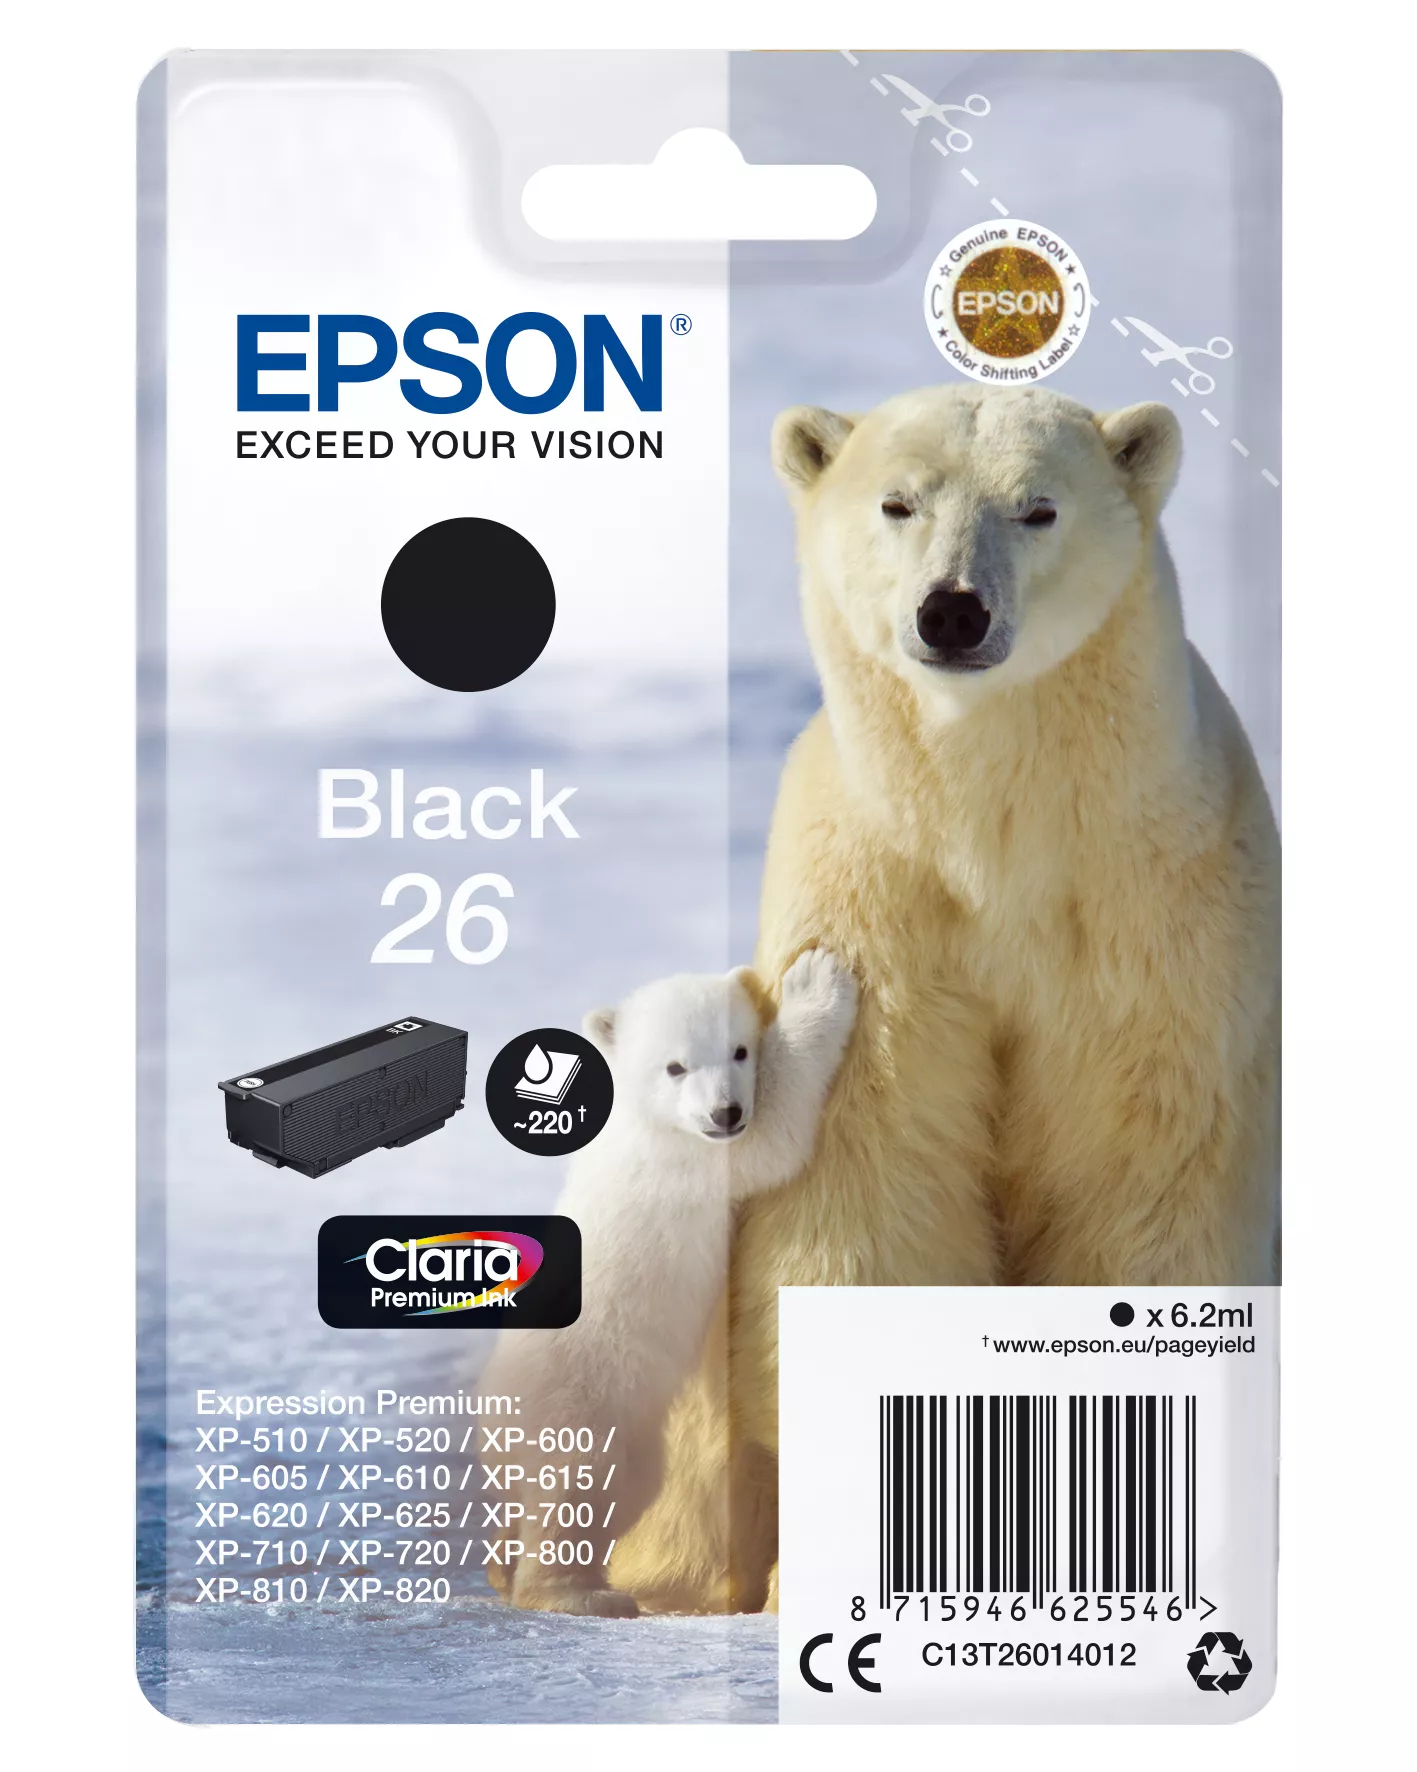 Achat EPSON 26 cartouche encre noir capacité standard 6.2ml 220 au meilleur prix